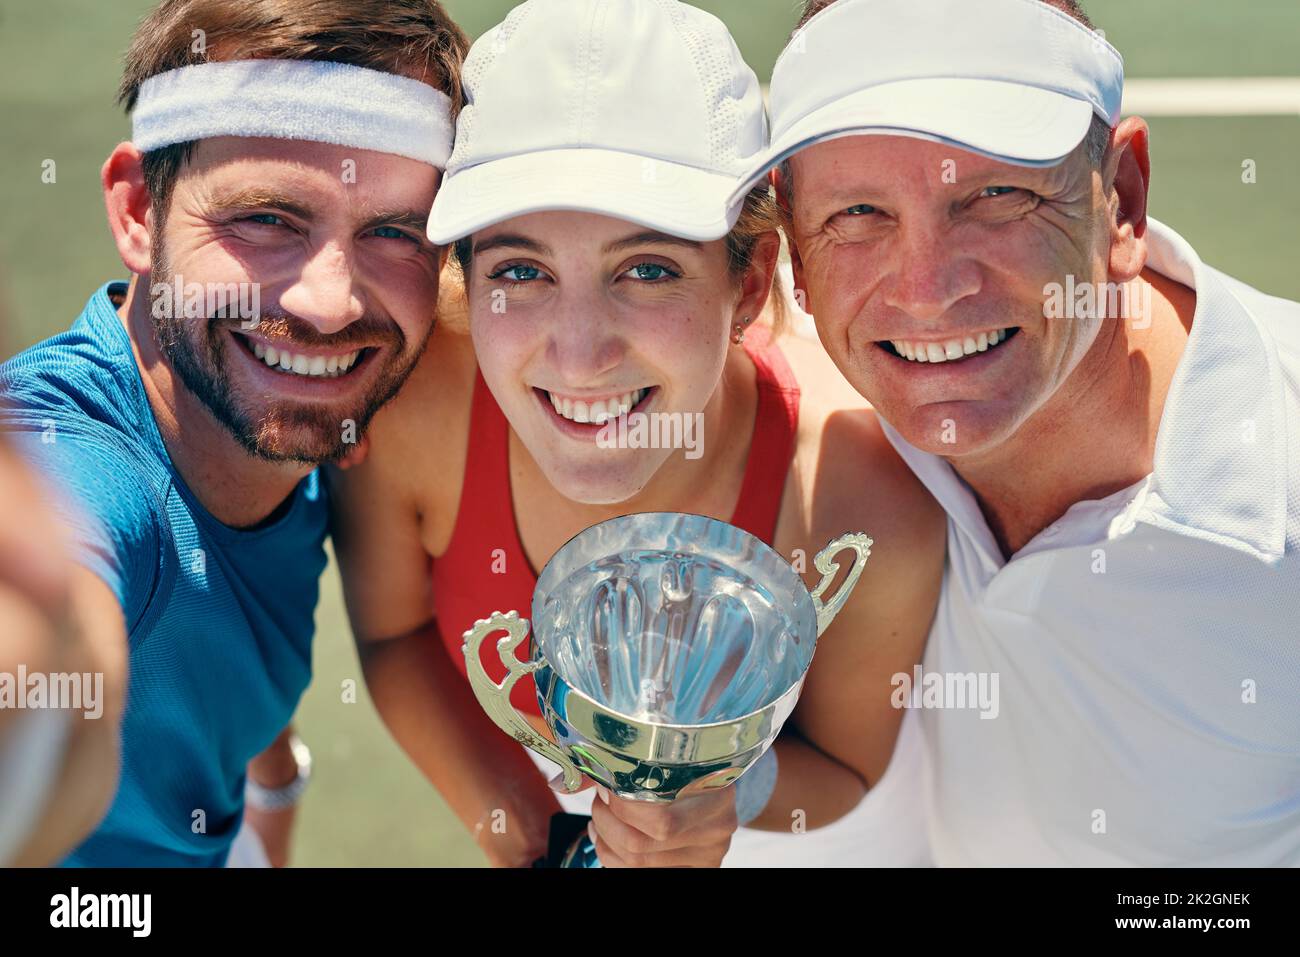 Ein großes Lächeln nach dem Sieg. Beschnittenes Porträt einer Gruppe von Sportlern, die nach dem Sieg eines Tennismatches zusammen stehen und eine Trophäe in der Hand halten. Stockfoto